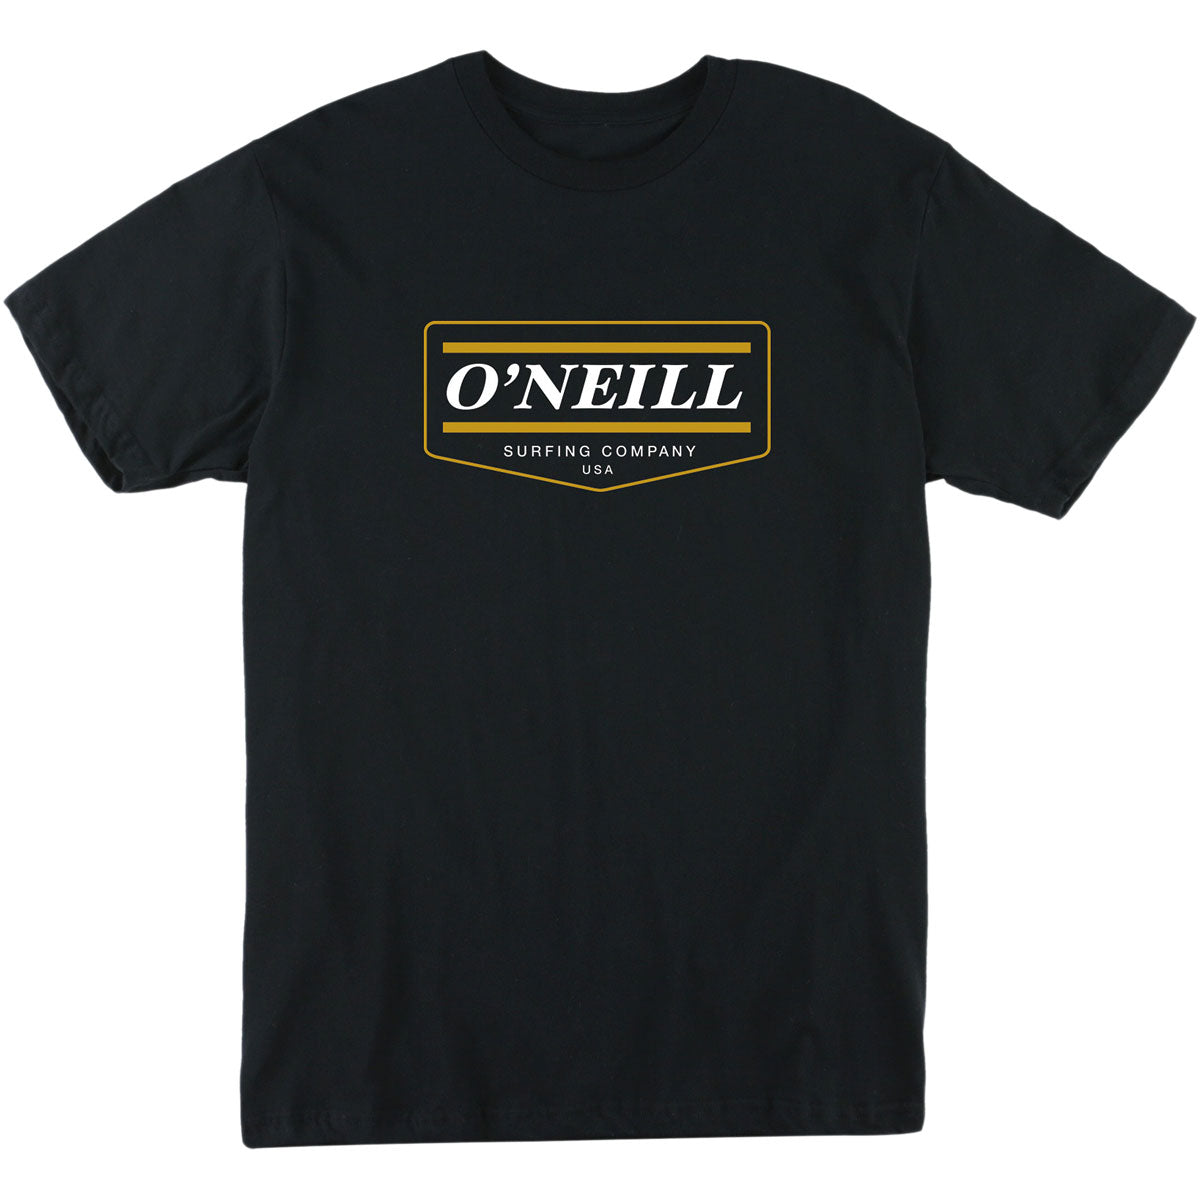 O'Neill Mover Youth Boys Short-Sleeve Shirts - Black